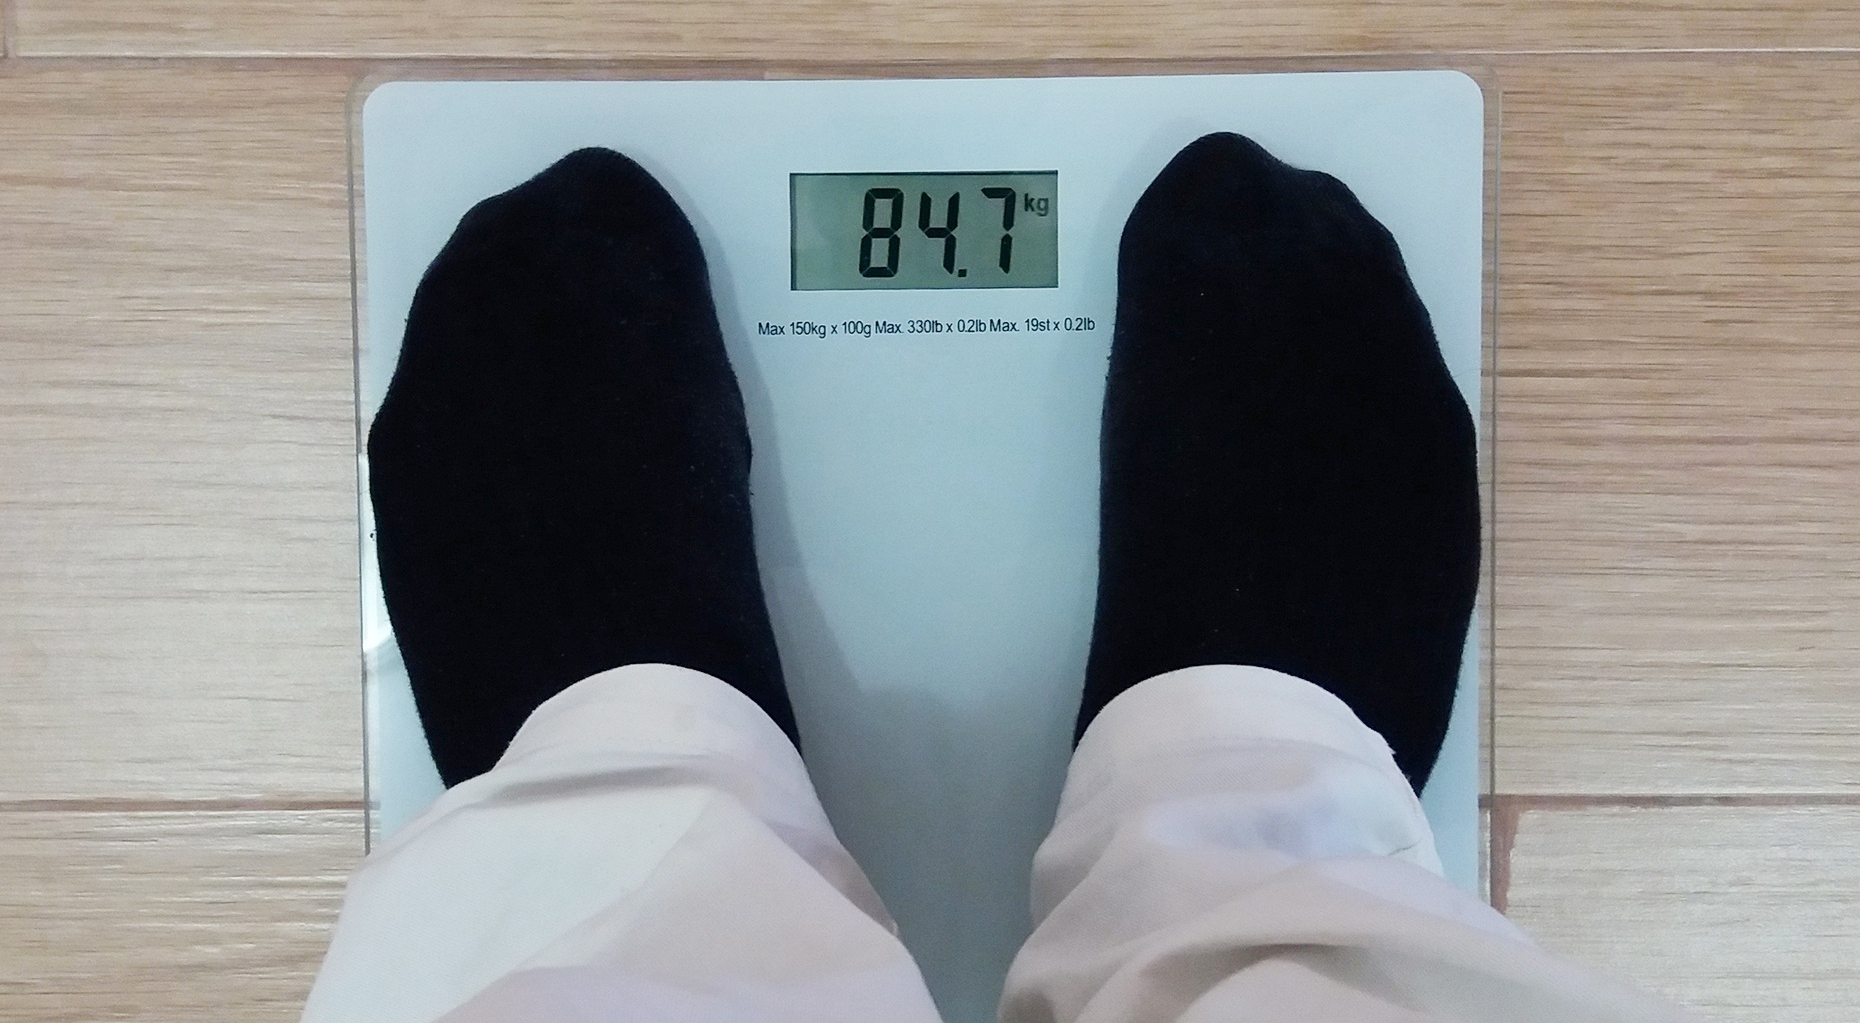 Existe um peso ideal? O excesso de peso é normalmente determinado pelo índice de massa corporal (IMC).